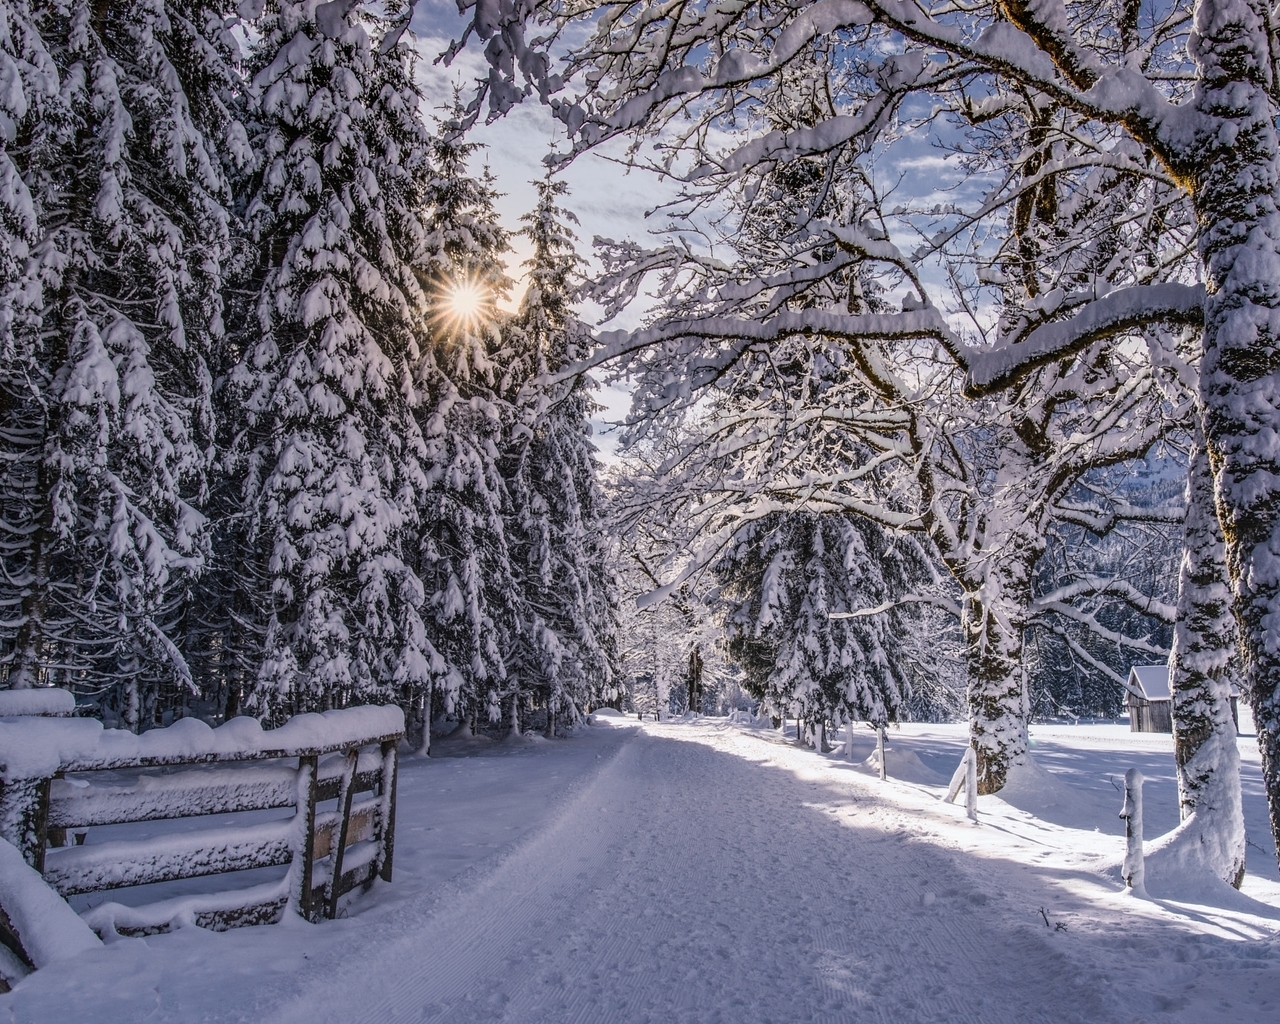 Картинка: зима, дорога, снег, лес, деревья, пейзаж